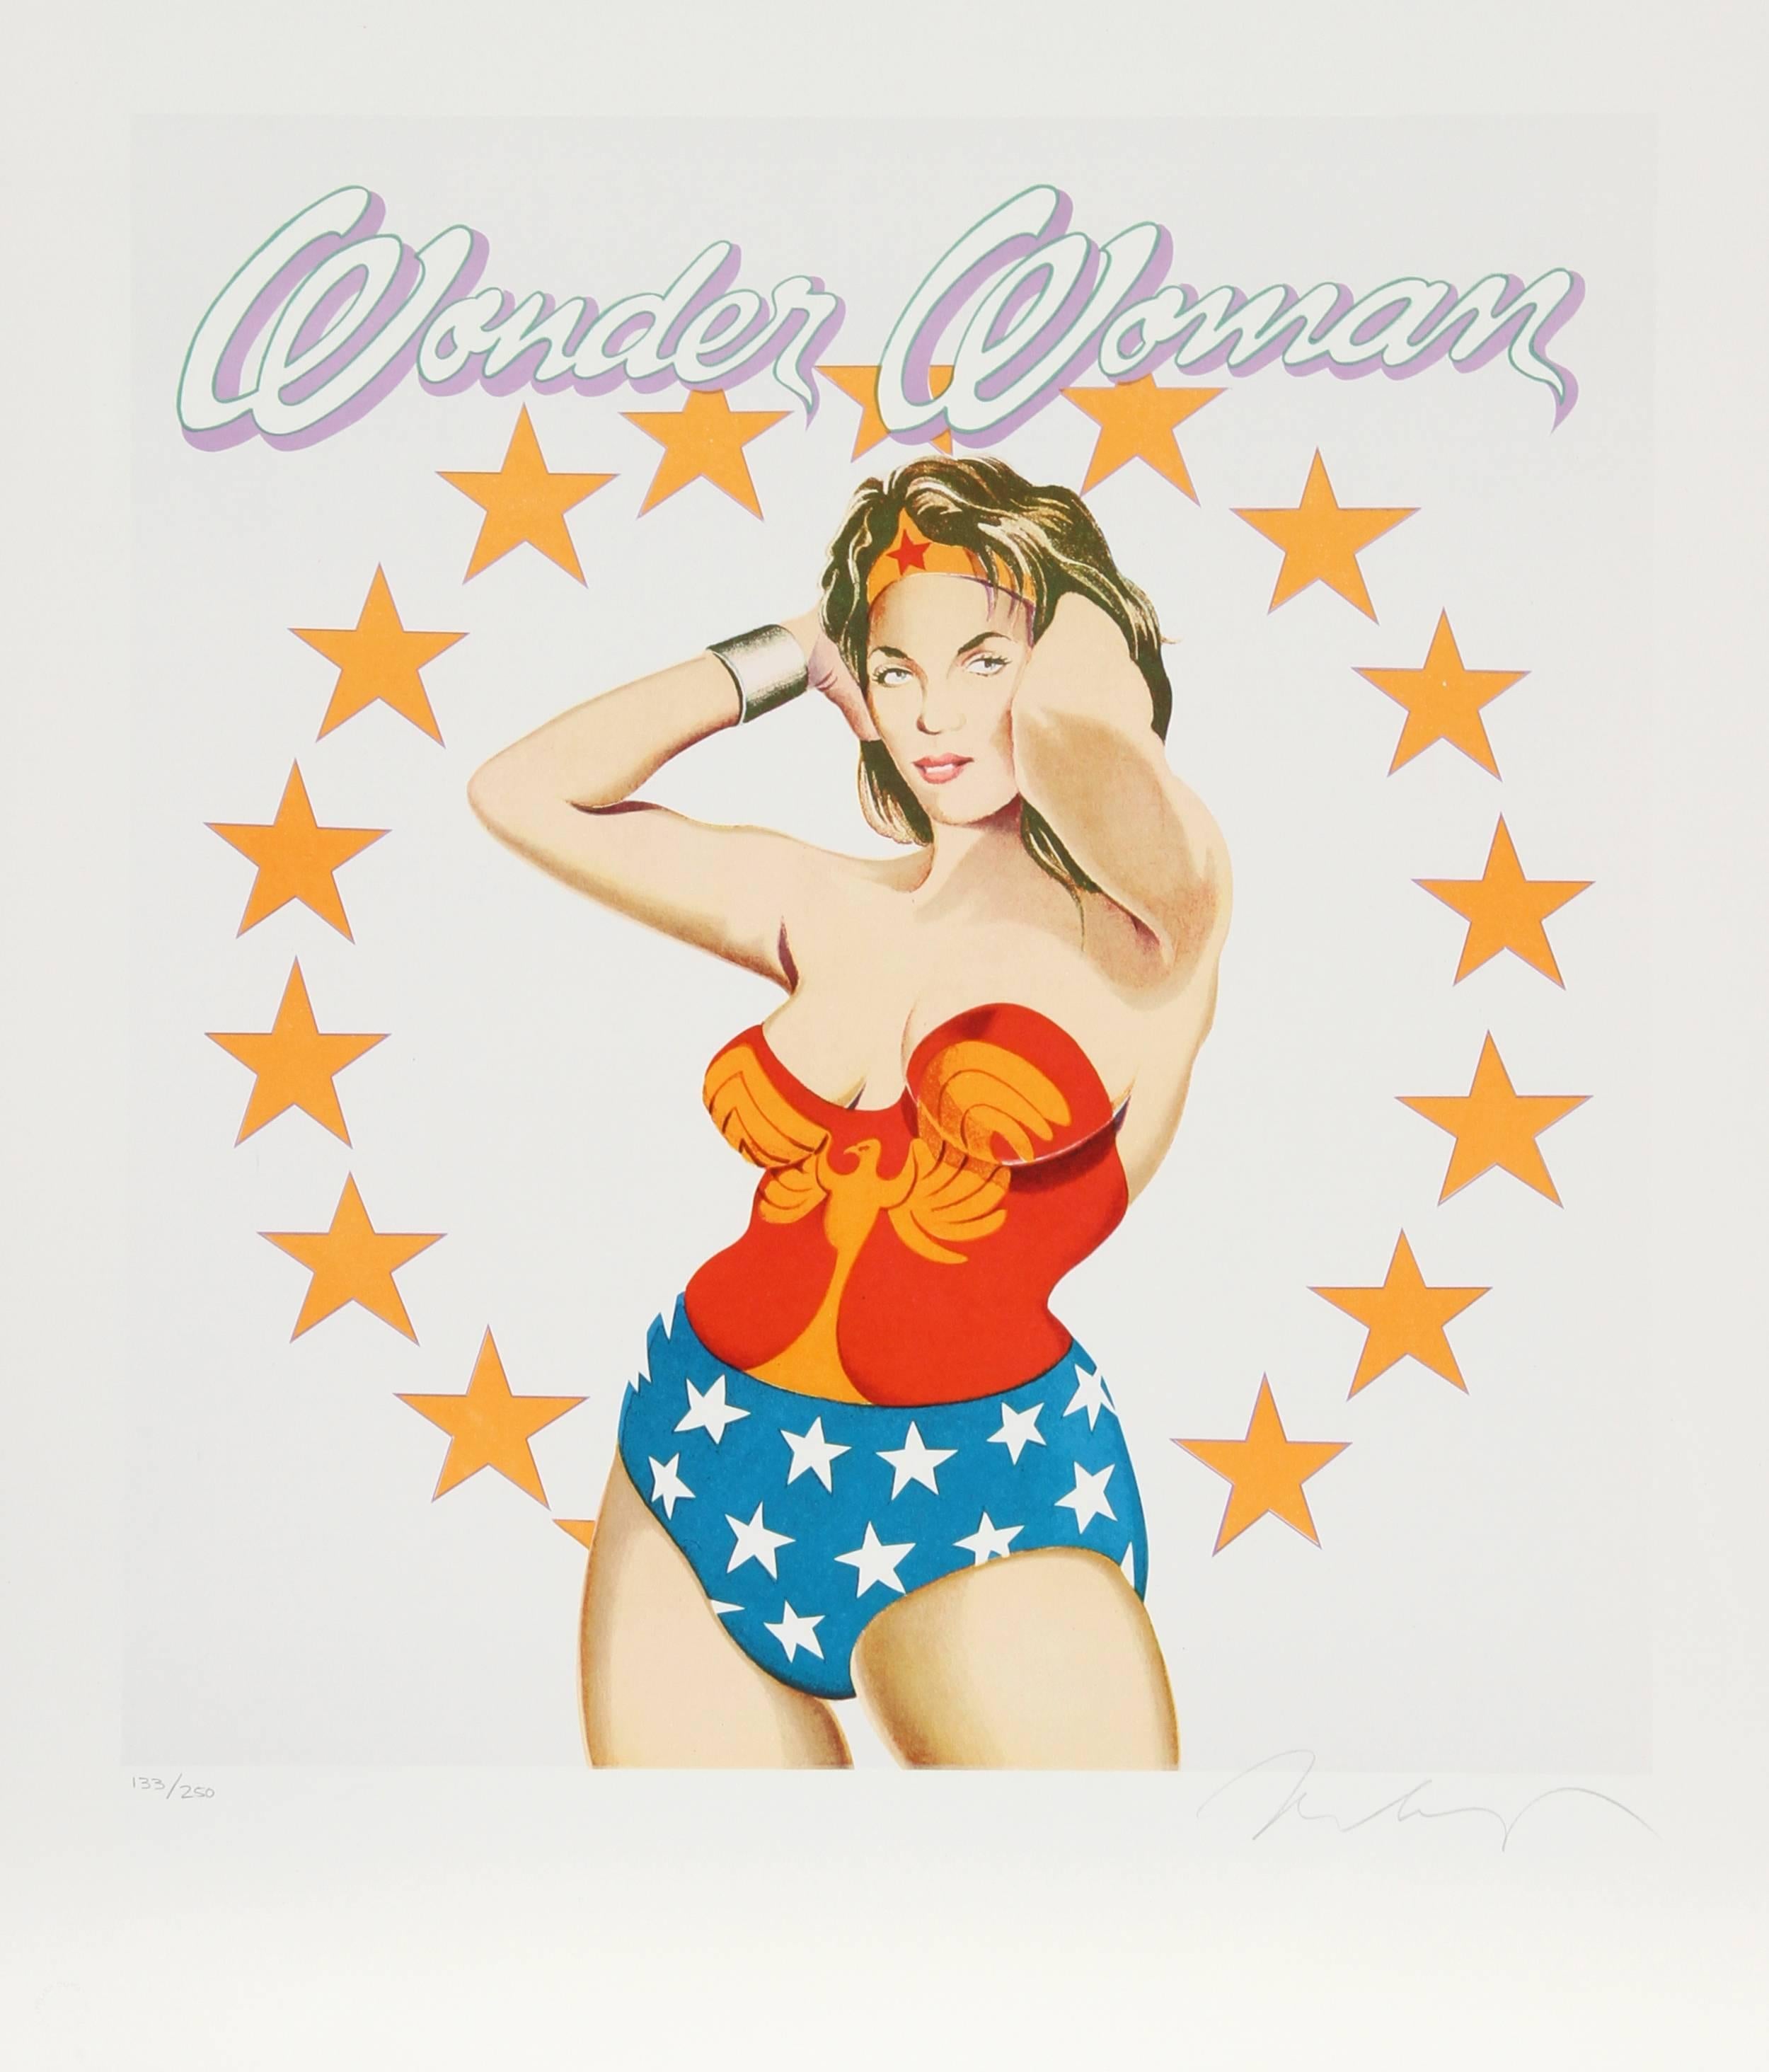 Artiste : Mel Ramos (américain, né en 1935)
Titre : Wonder Woman
Année : 1981
Médium : Lithographie, signée et numérotée au crayon
Edition : 250
Taille : 24,5 in. x 20 in. (62,23 cm x 50,8 cm)